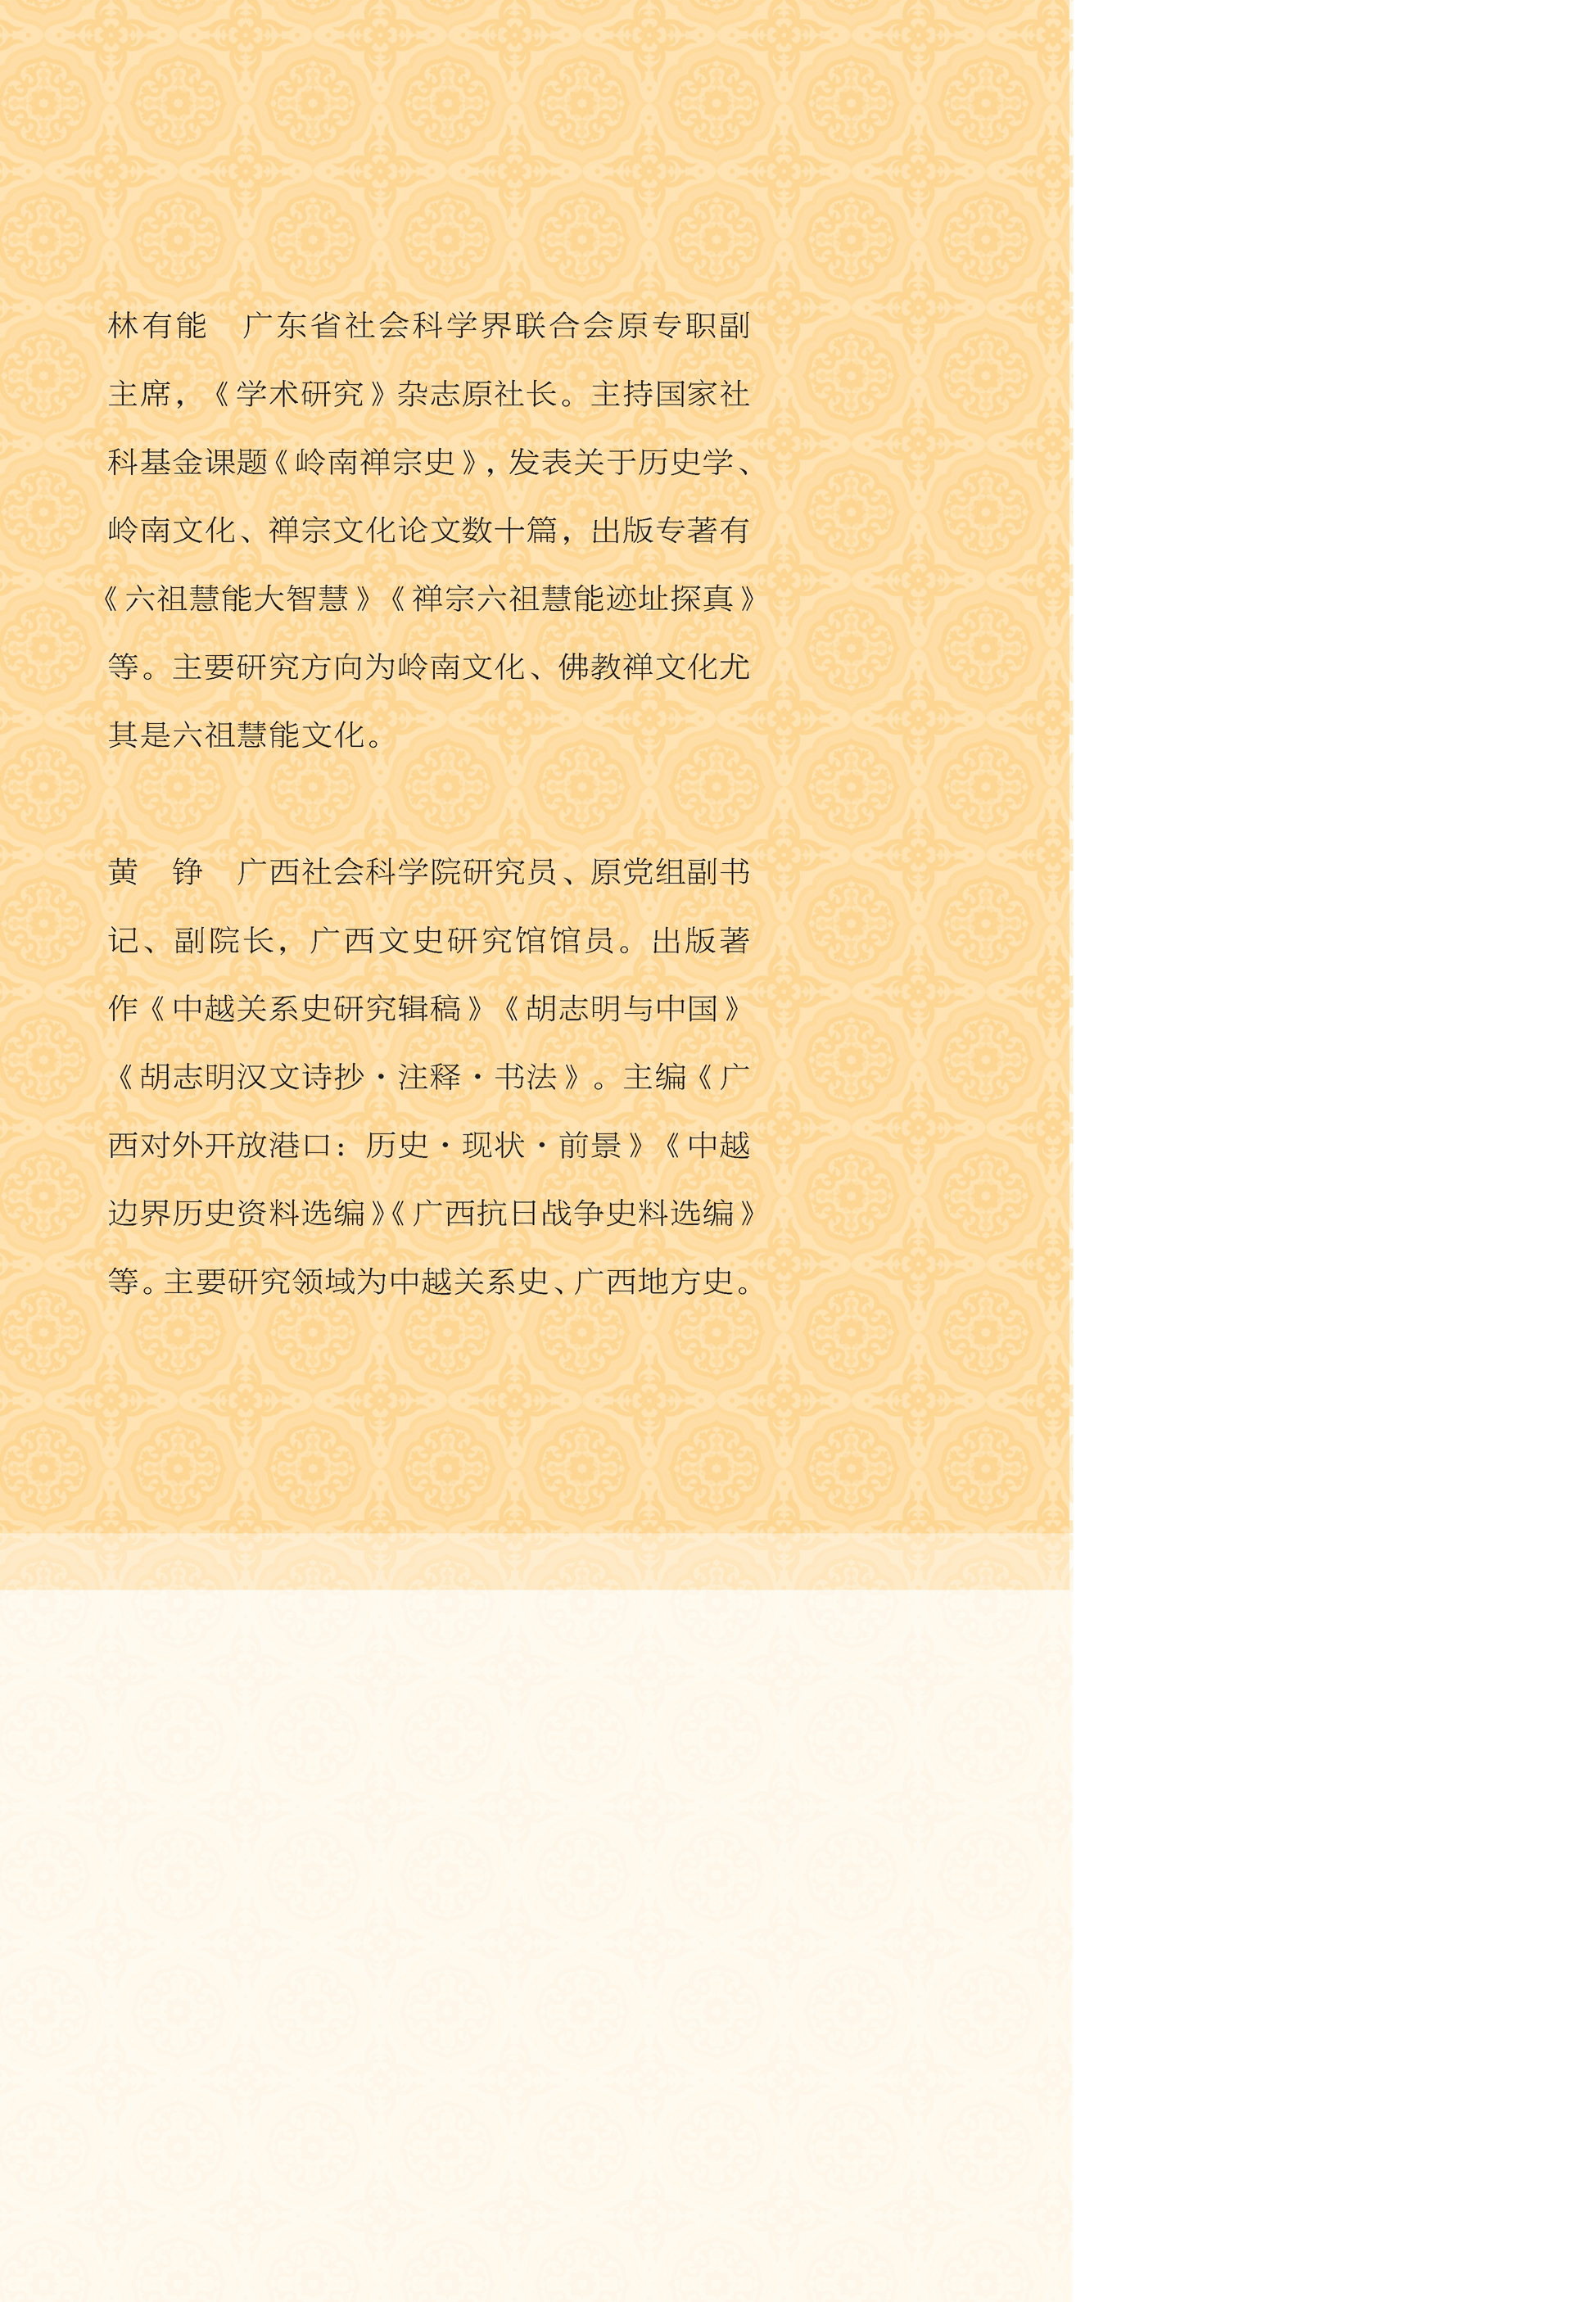 六祖慧能文化研究pdf/doc/txt格式电子书下载